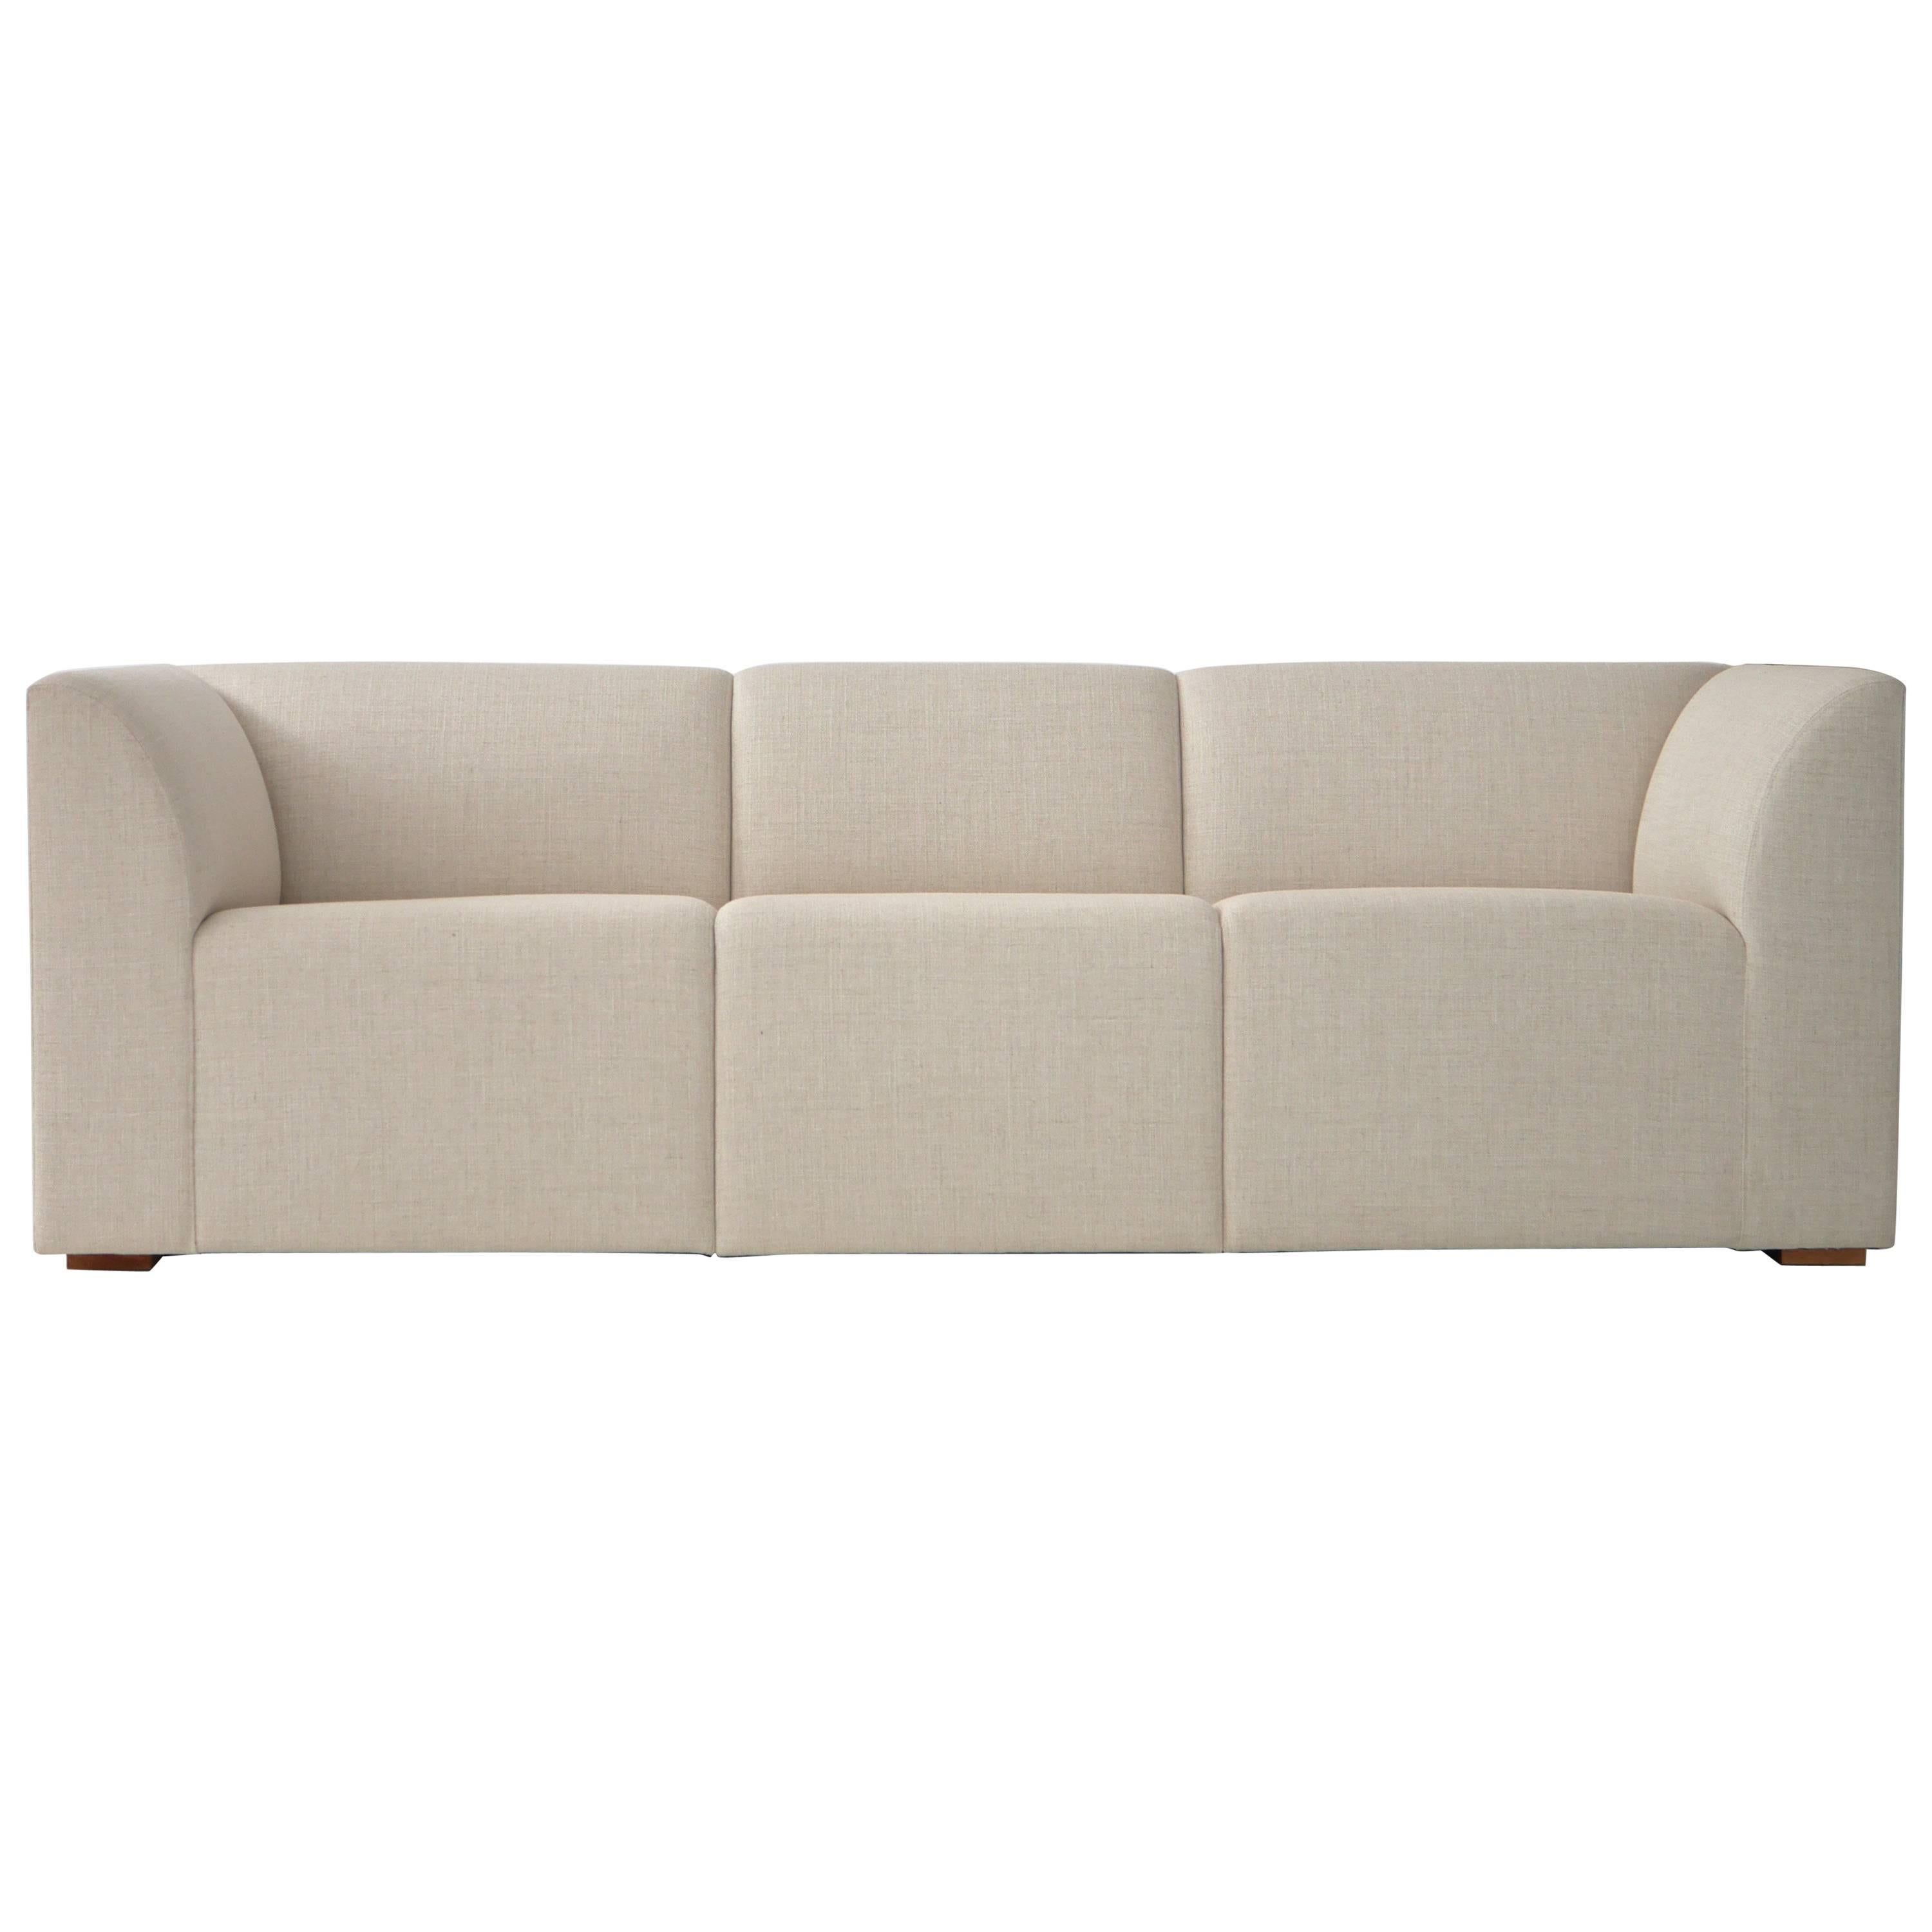 Michael Hurst "Full House" Sofa For Sale